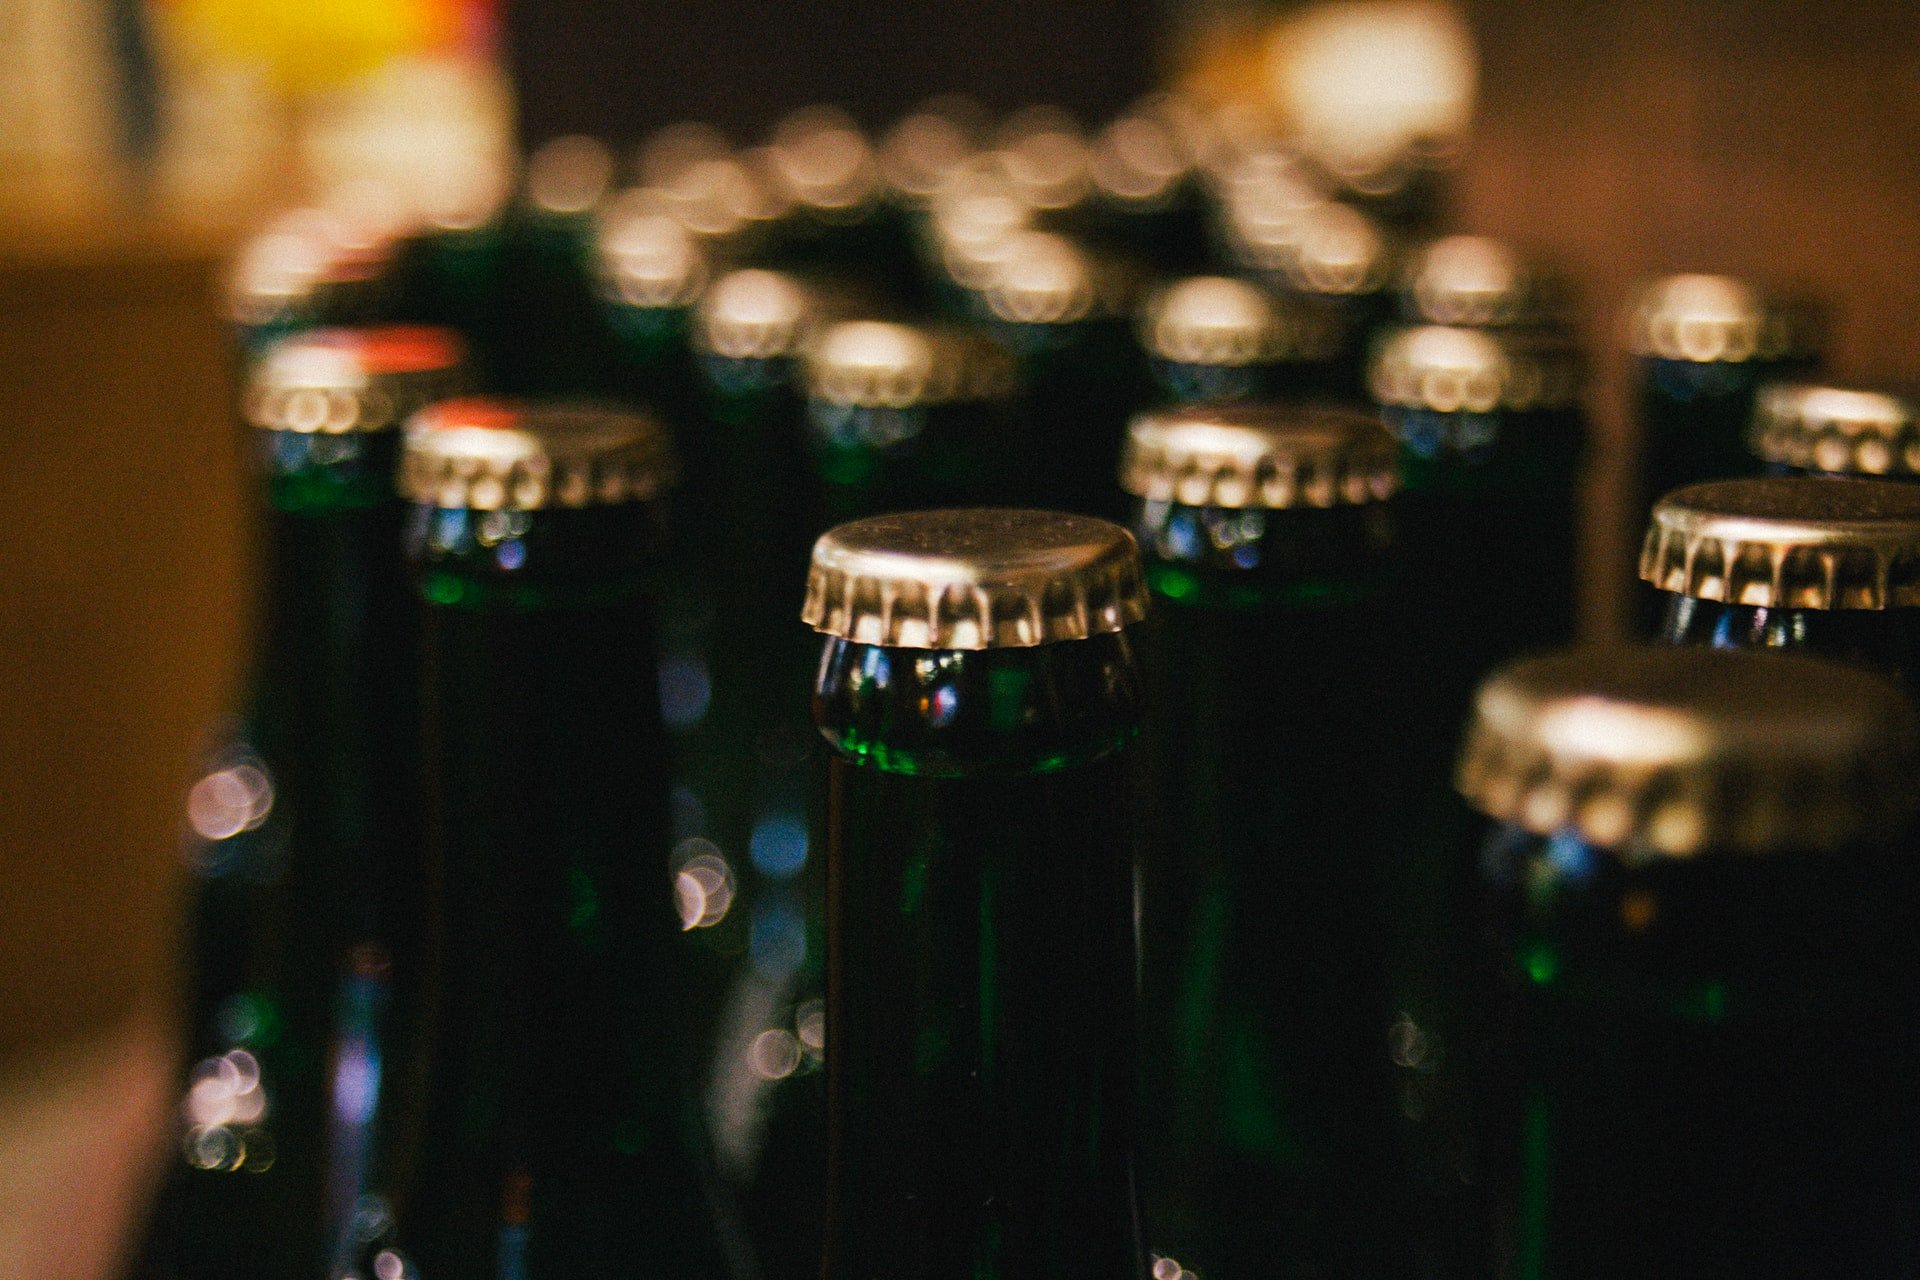 

С 11 по 12 июня в Ижевске частично запретят продажу алкоголя

